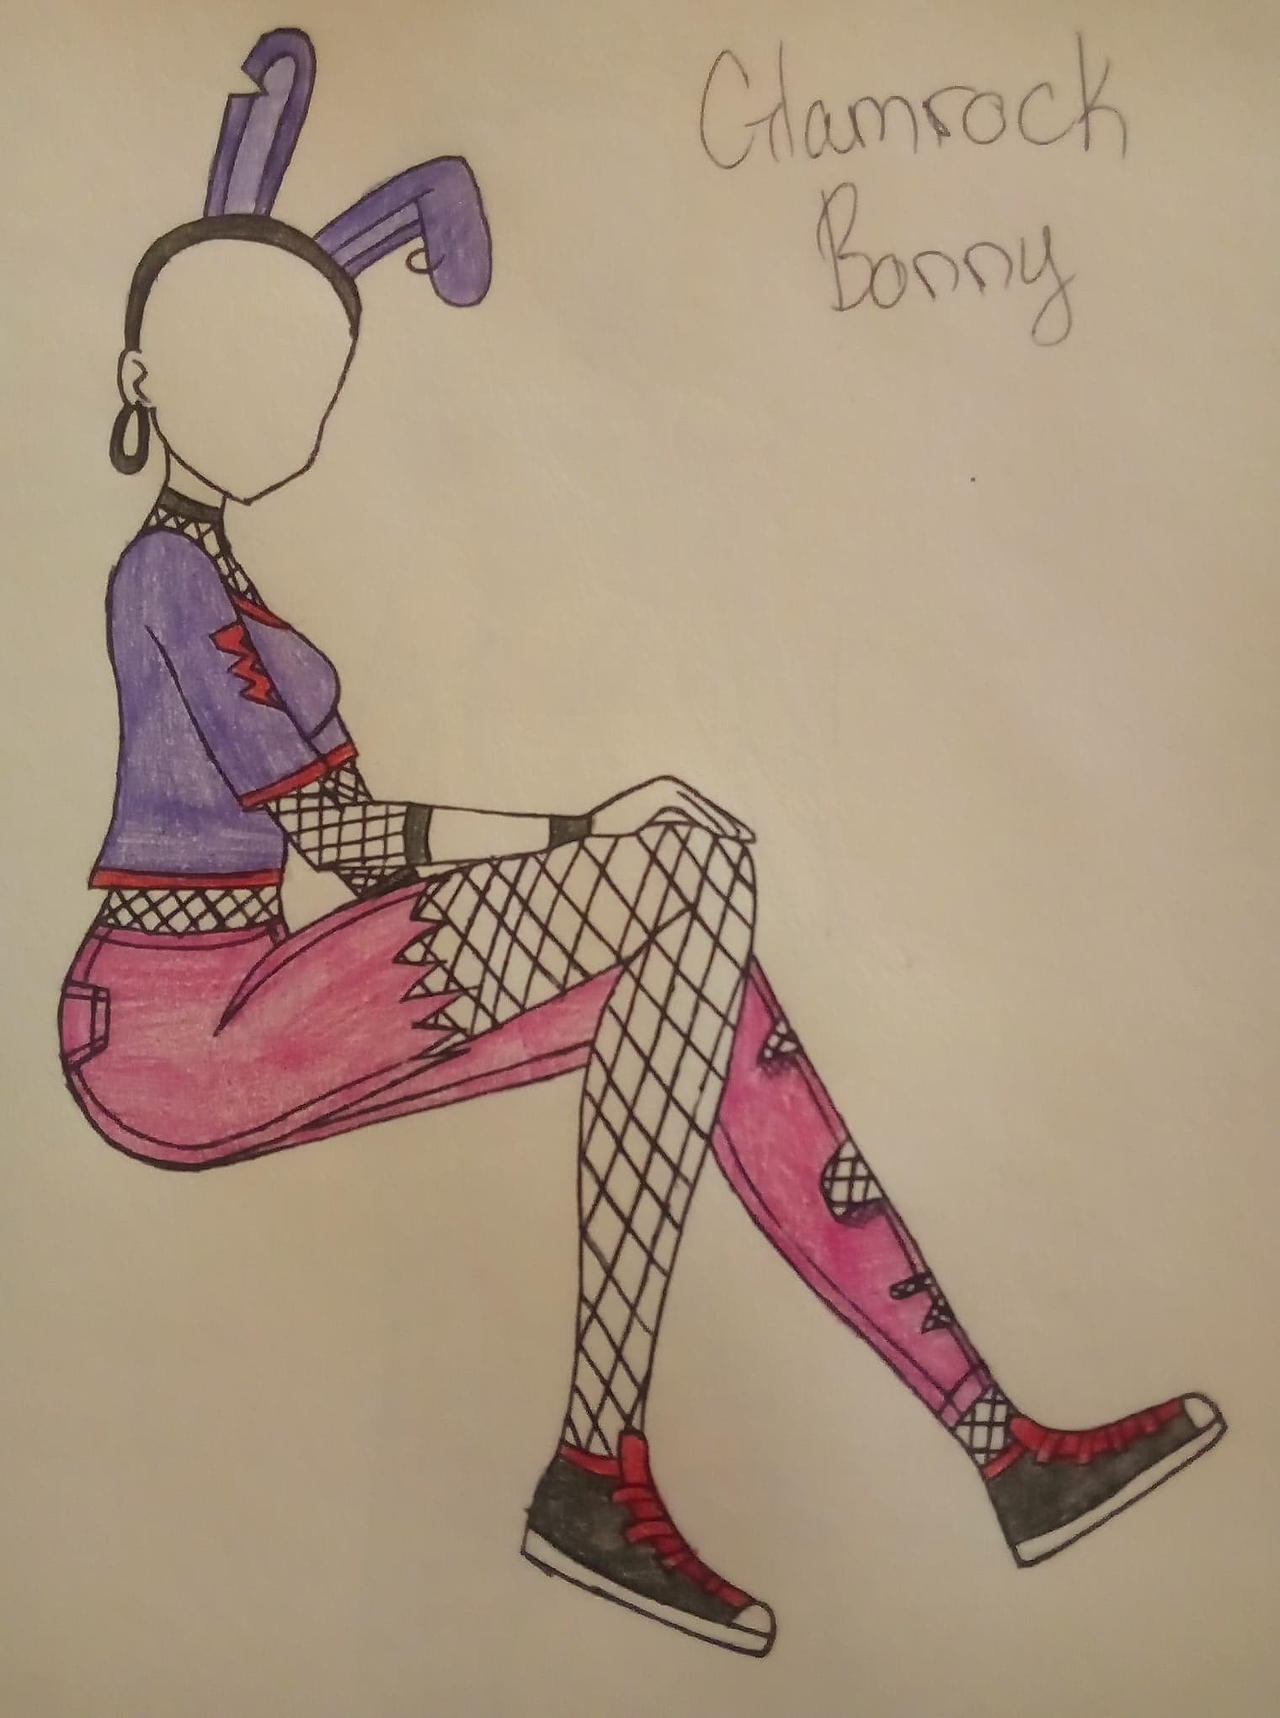 Glam rock Bonnie sketch by ghosty86 on DeviantArt